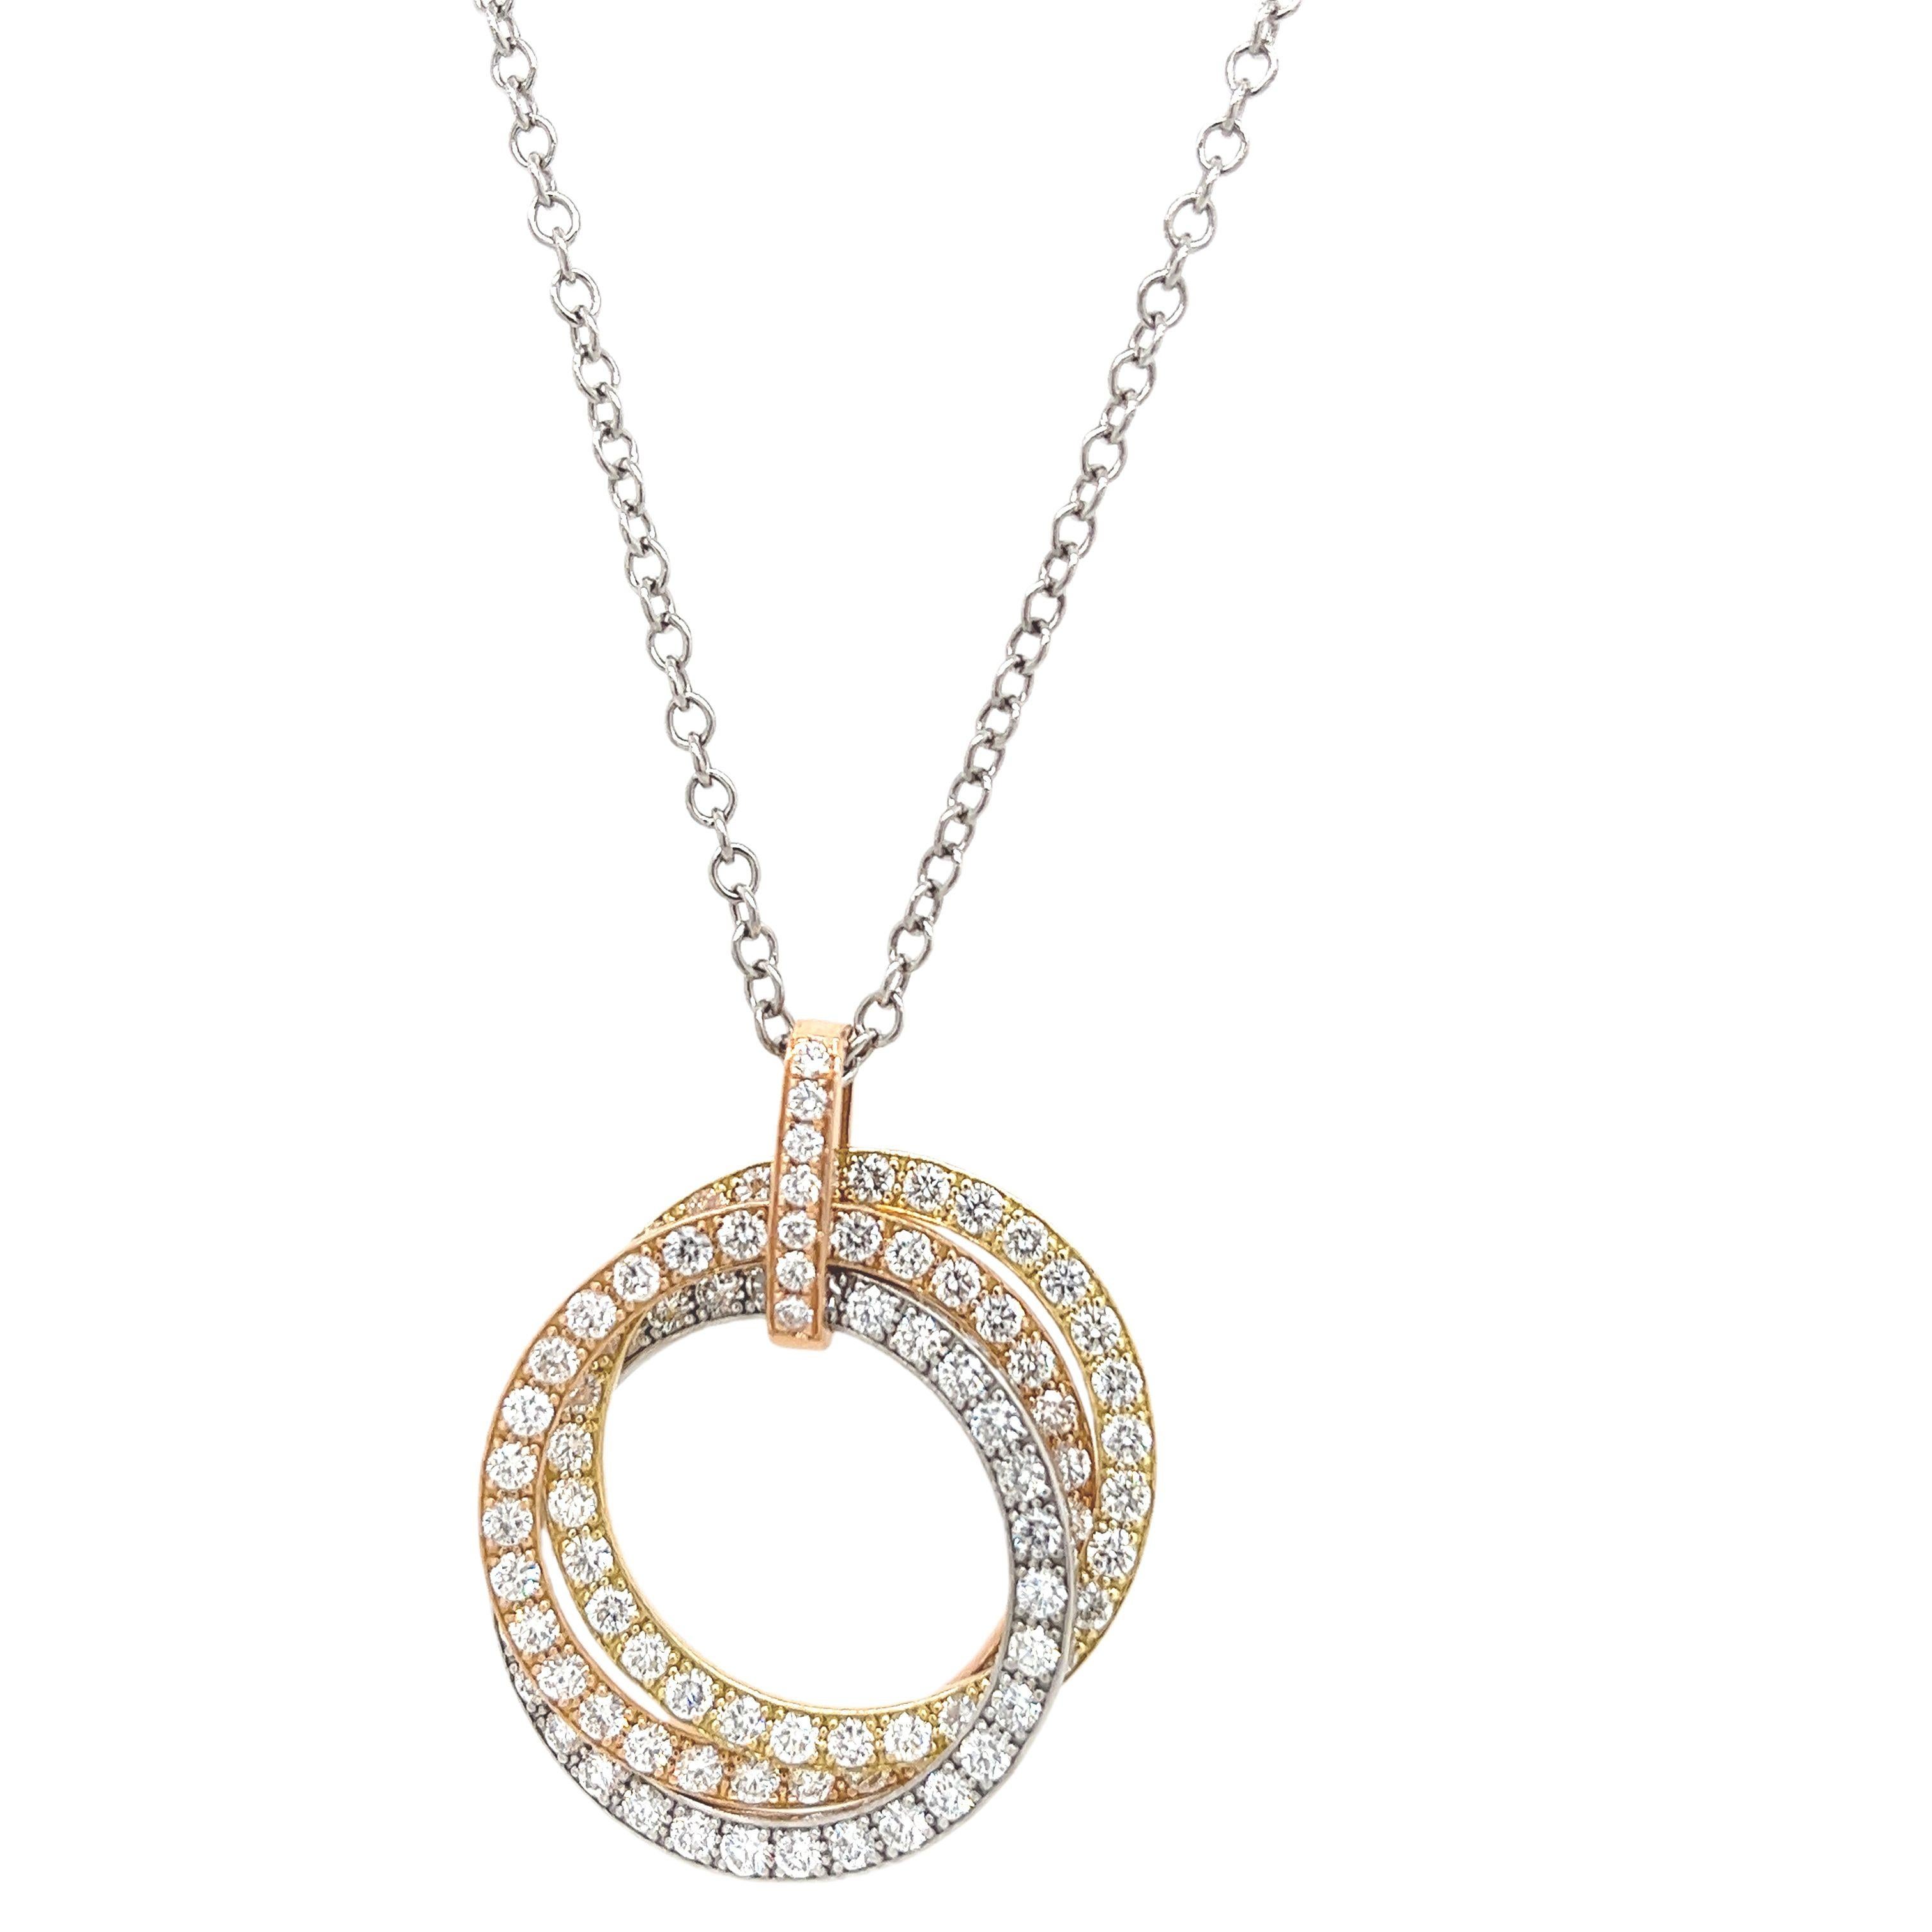 Ce magnifique pendentif cercle de vie en diamant de 3 couleurs est serti dans de l'or rose, blanc et jaune 9ct avec 2,60ct diamants ronds de taille brillant. Il est suspendu à une chaîne en or blanc 9ct de 26